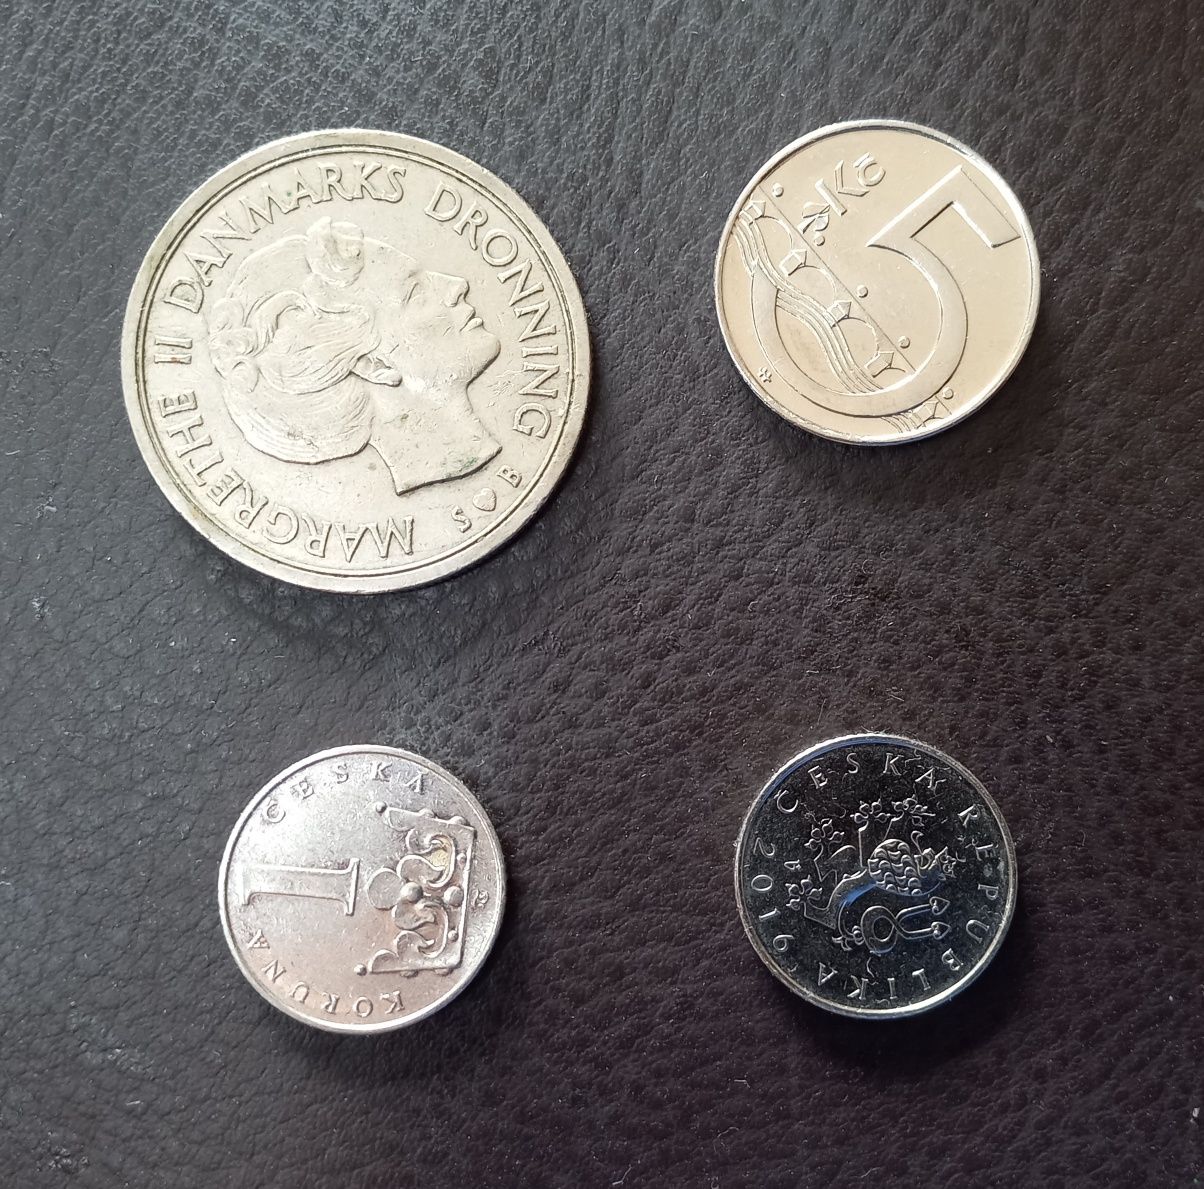 4 moedas estrangeiras